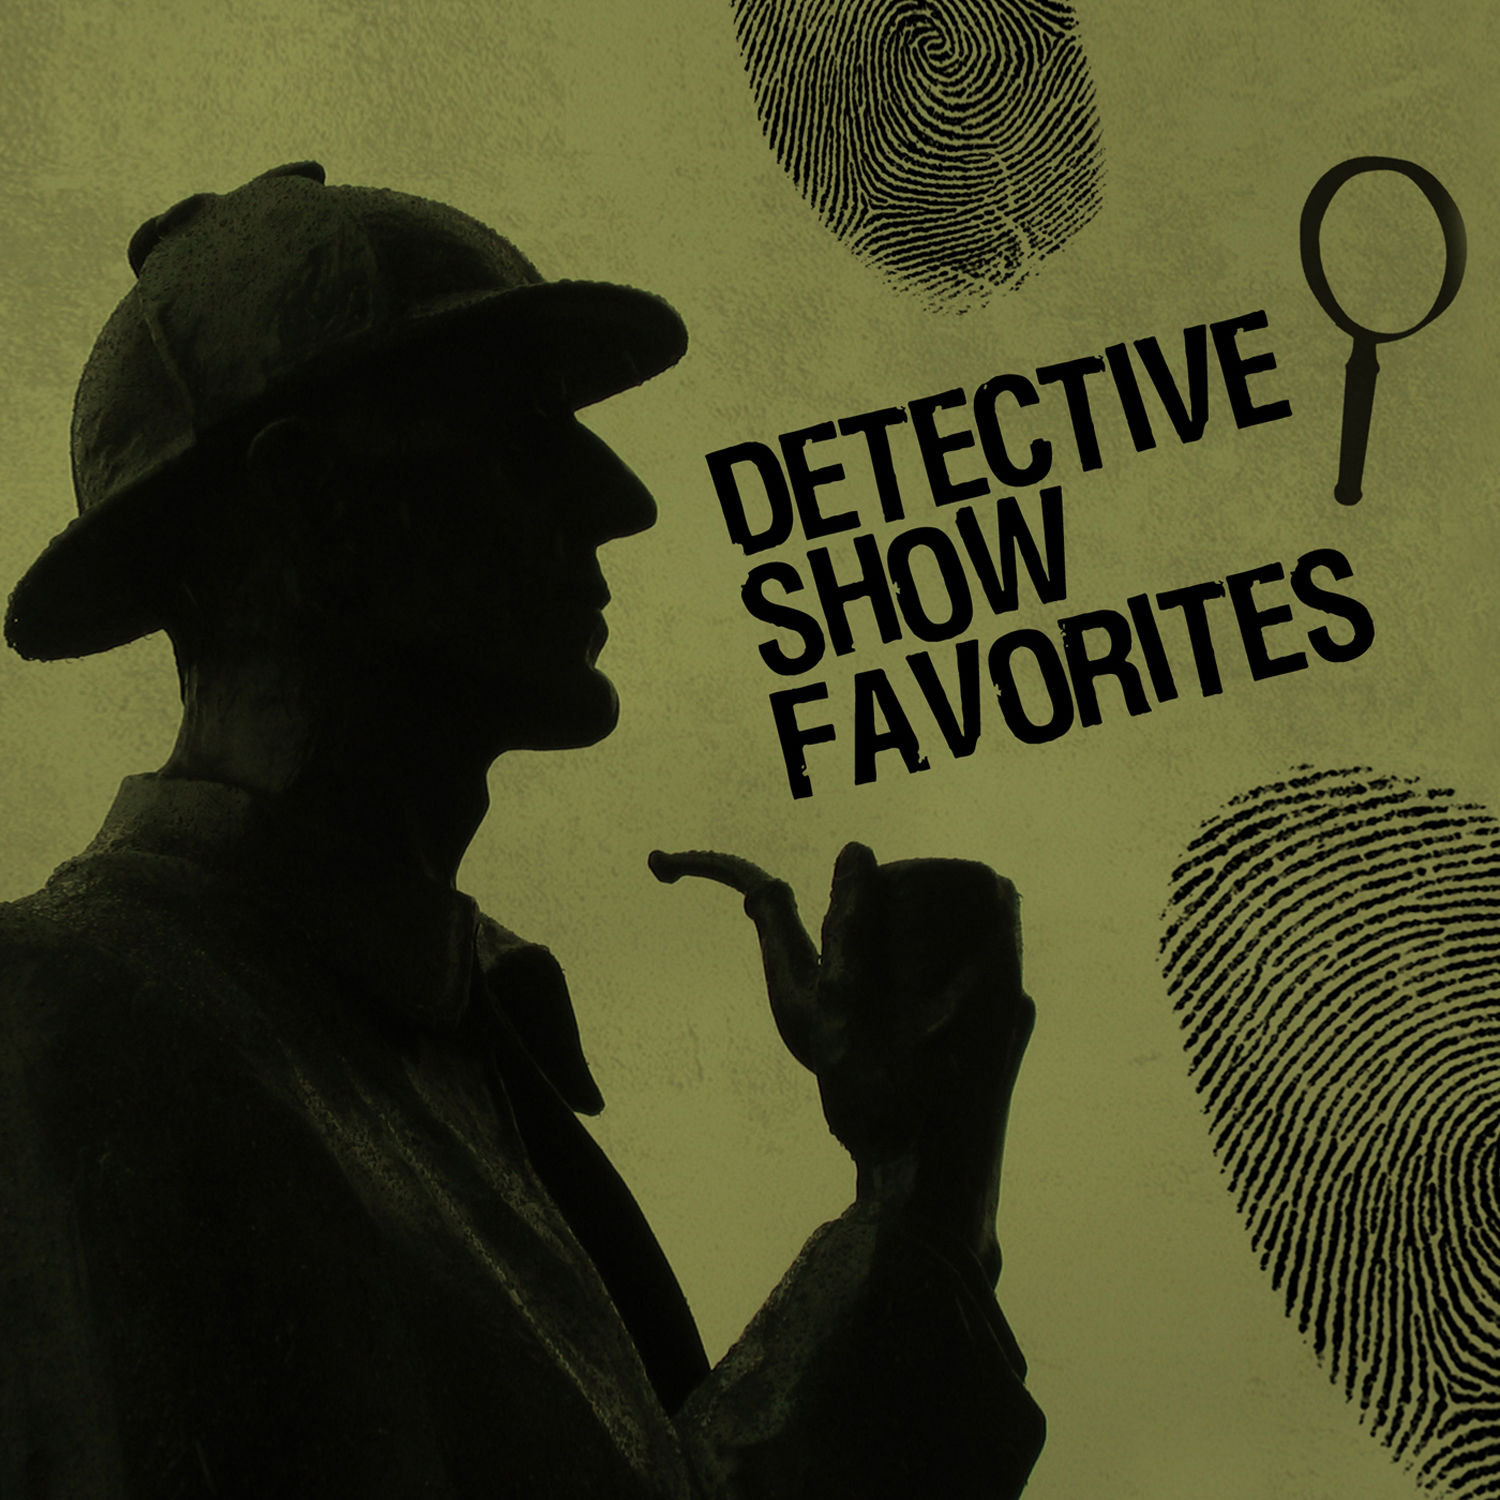 Детективы слушать новинки. Обложки детективов. Детектив афиша. Детектив плакат. Детективное шоу.